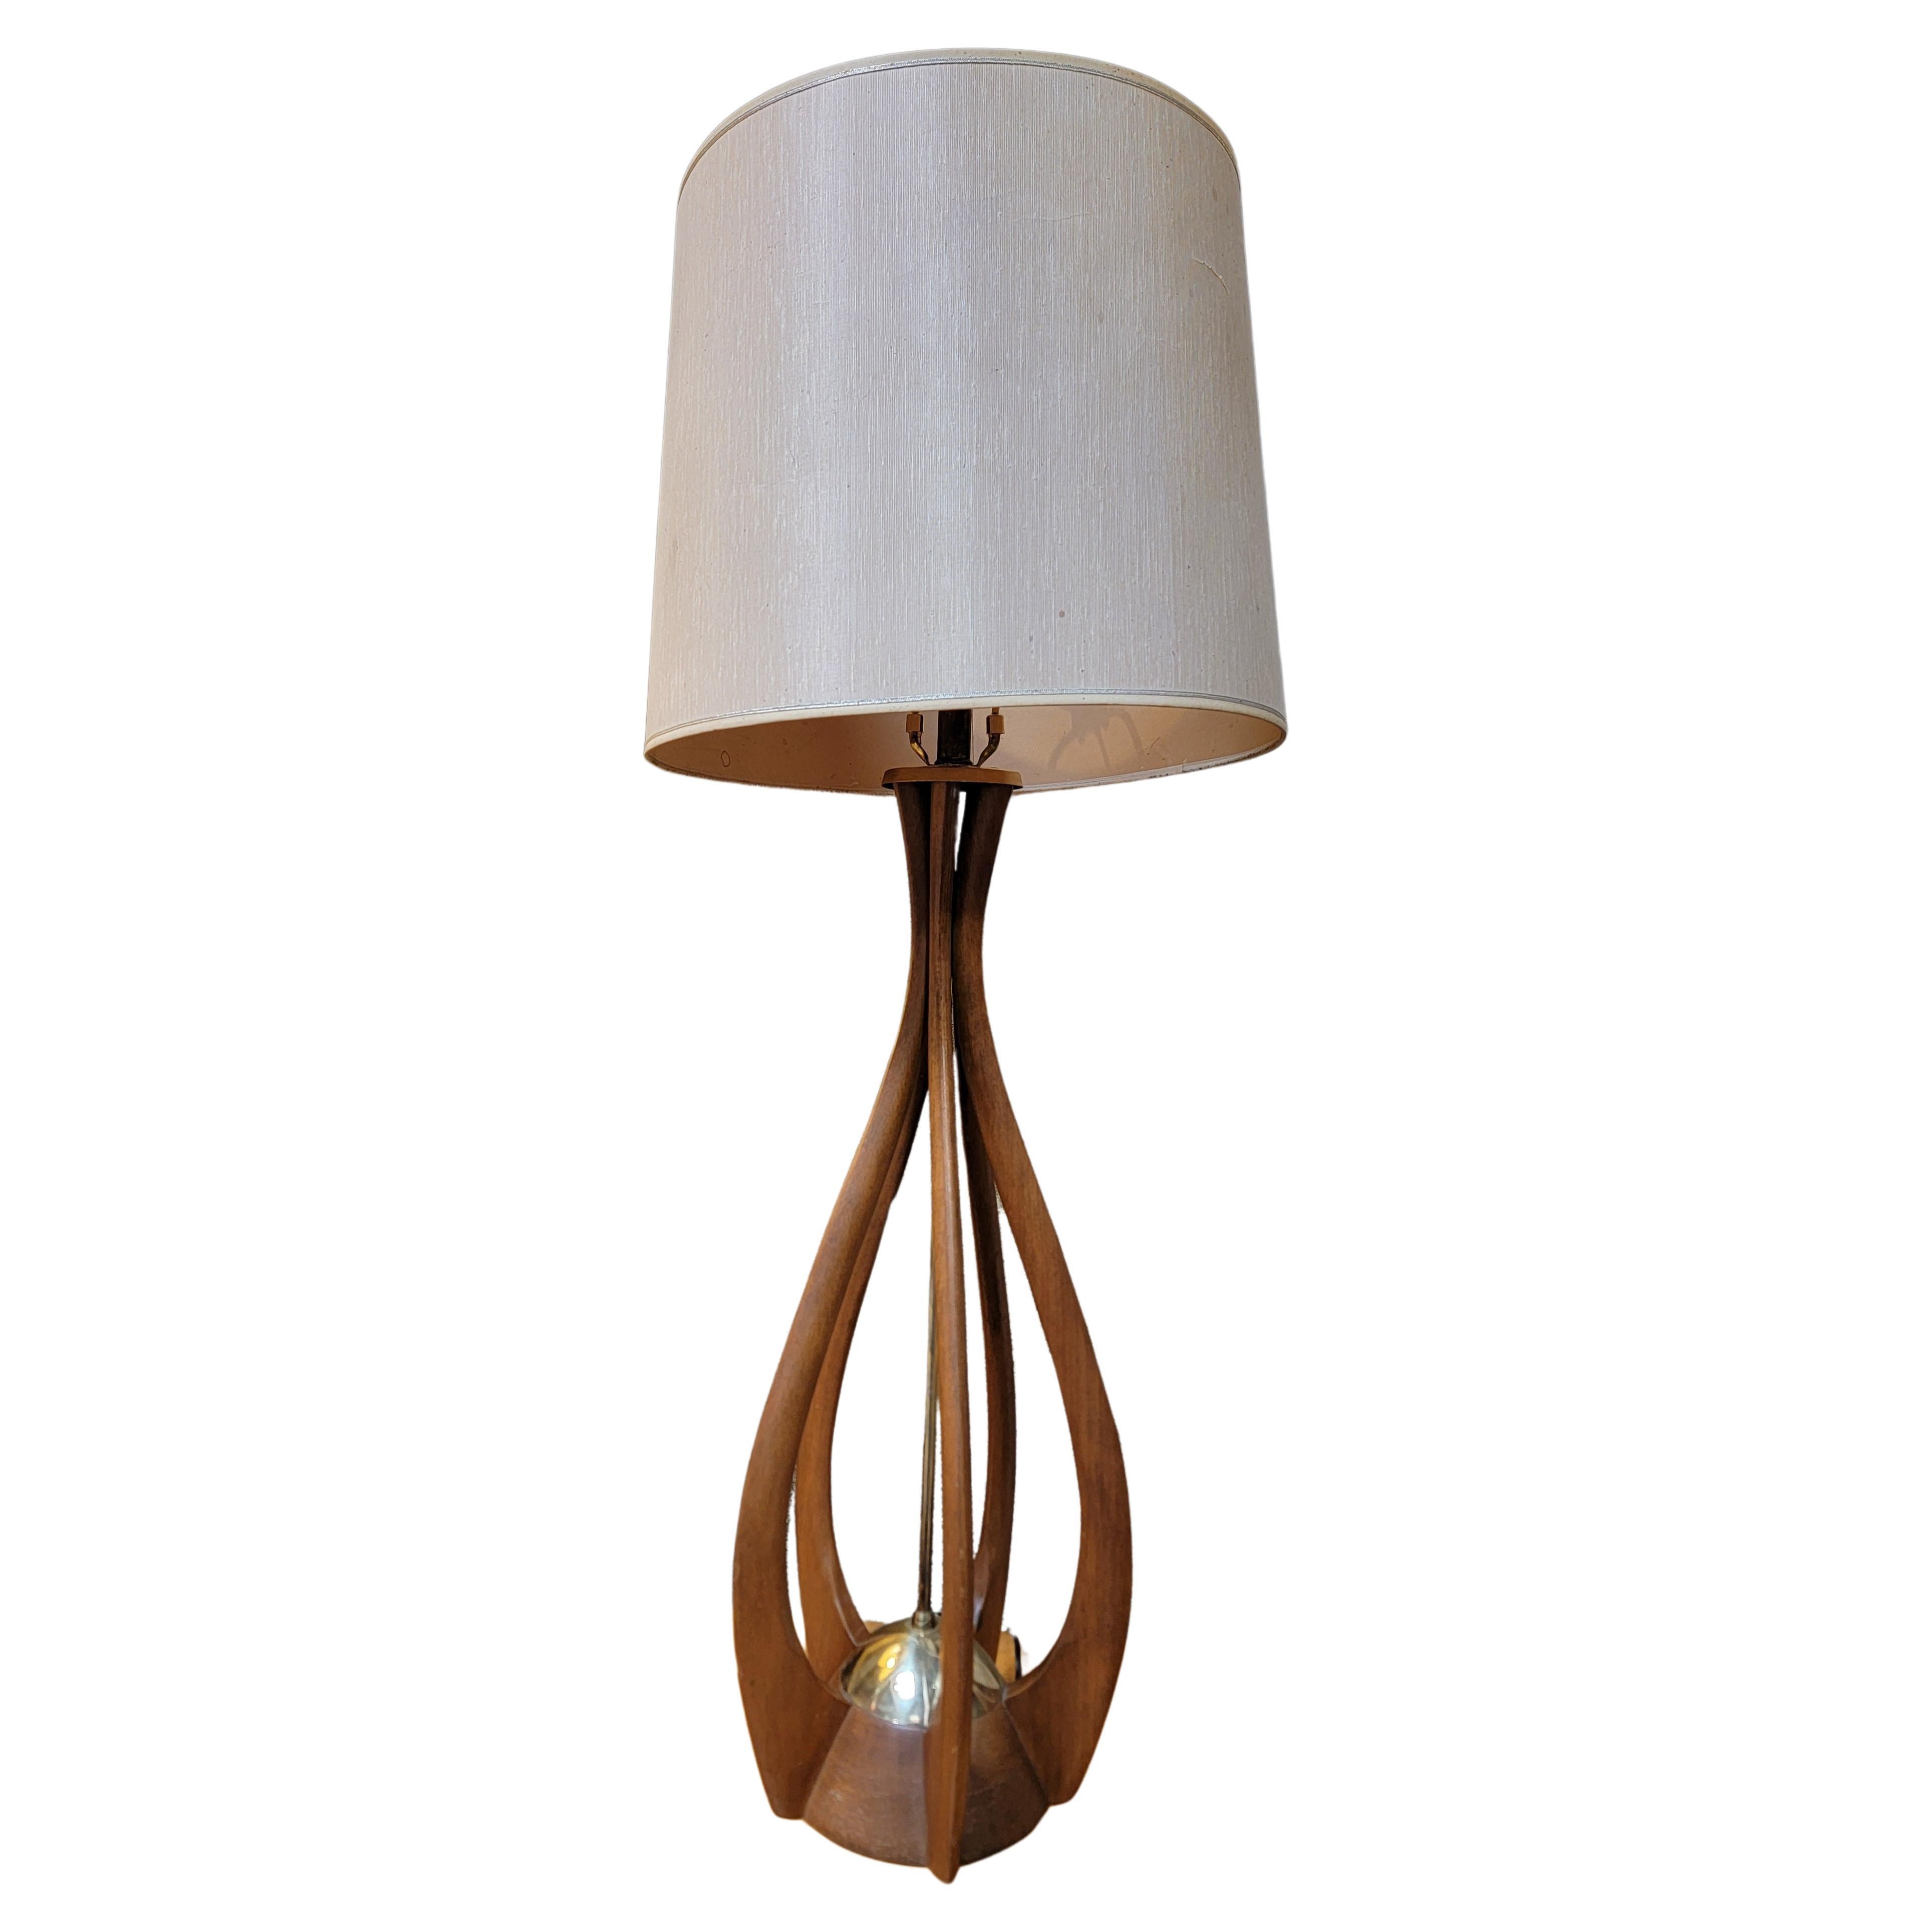 Sculptural Table Lamp manner of Modeline